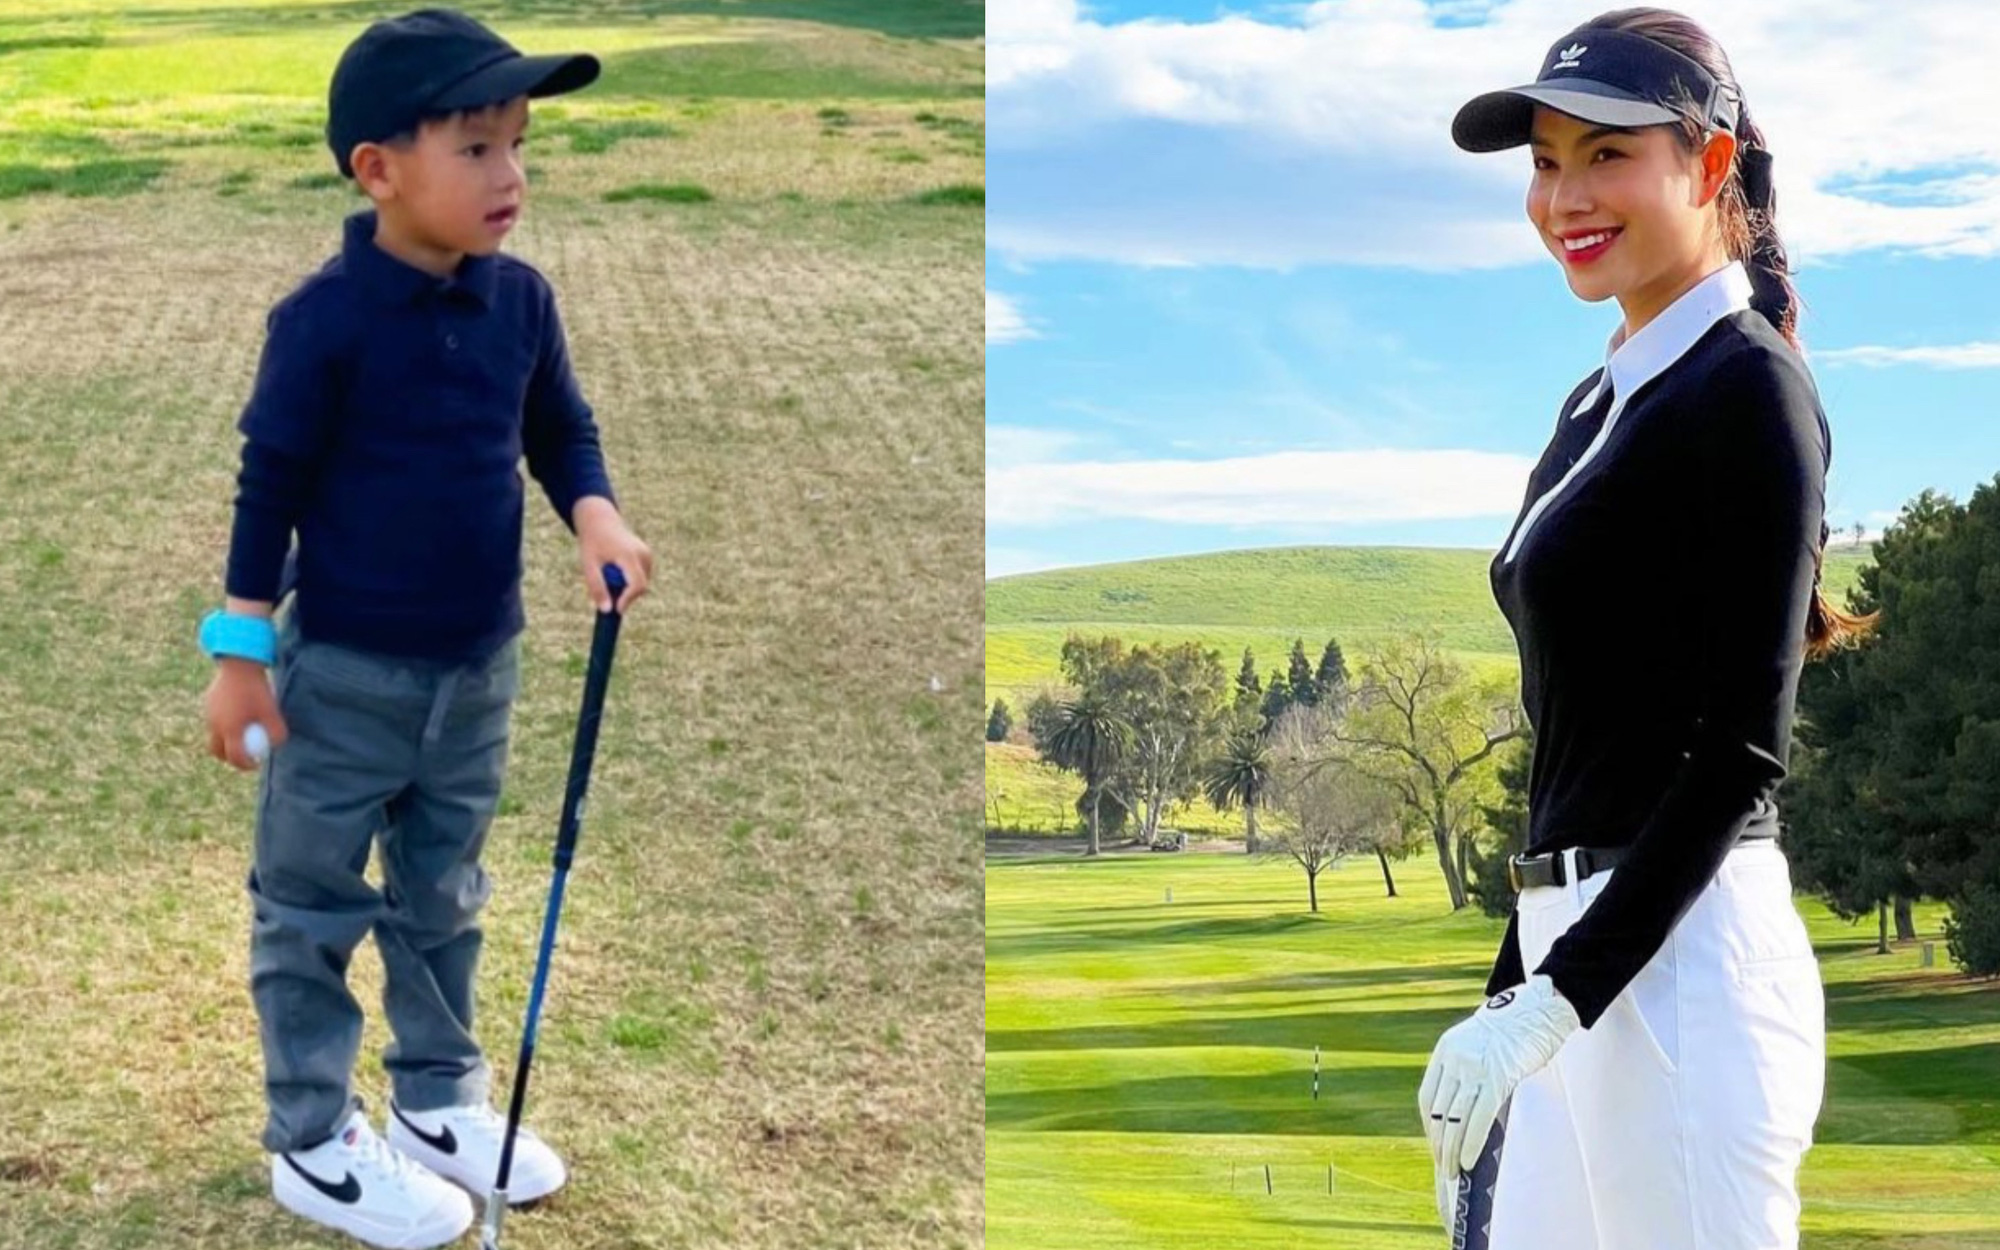 Quý tử hào môn của Phạm Hương: 3 tuổi đã ra sân golf cùng mẹ, bất ngờ nhất là điều chỉ có ở hội con nhà giàu?